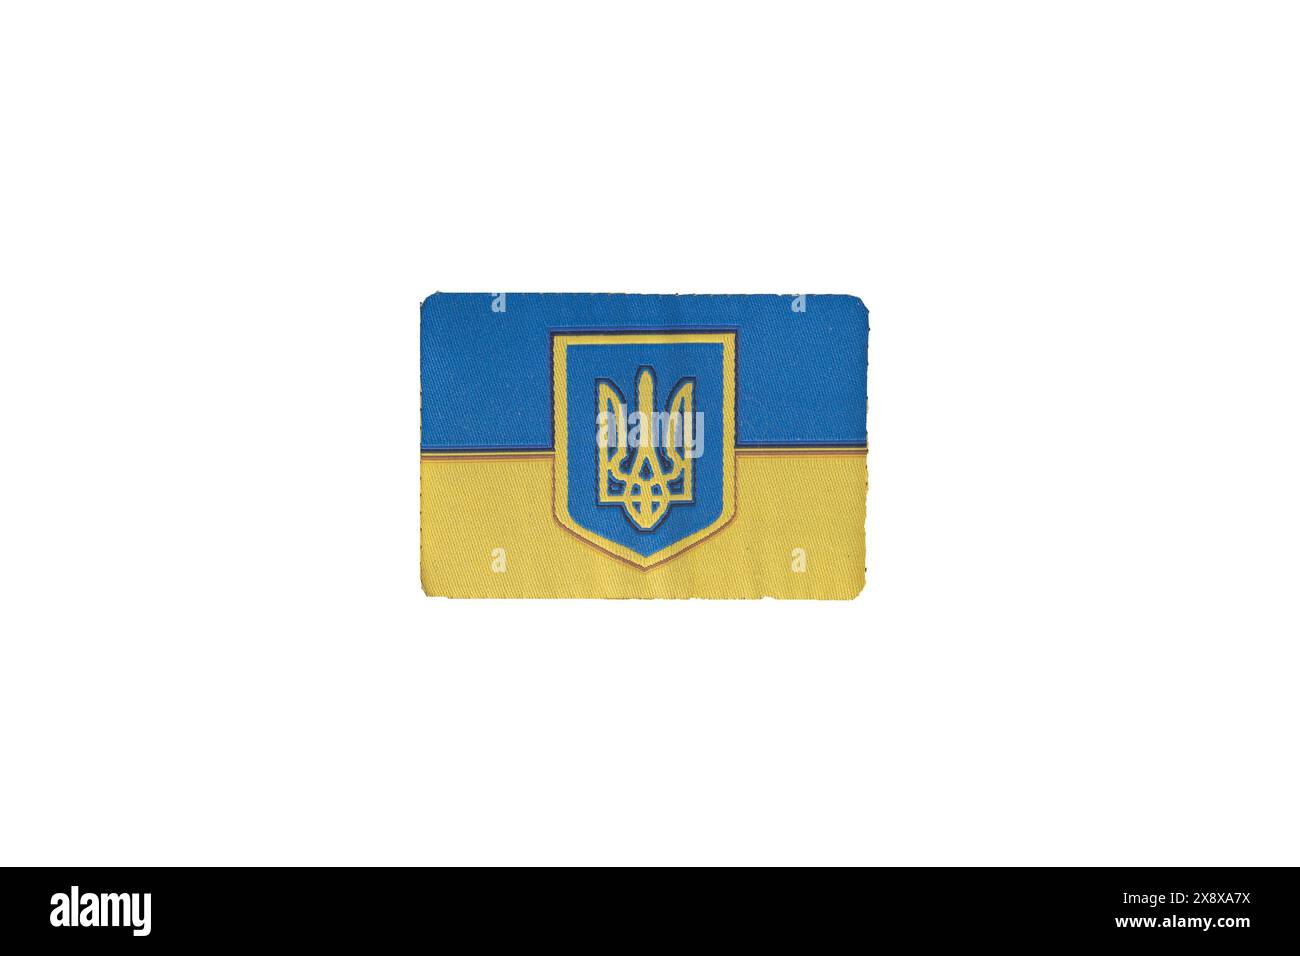 Ukrainischer Stoff Uniform Flag Patch isoliert auf weißem Hintergrund Stockfoto